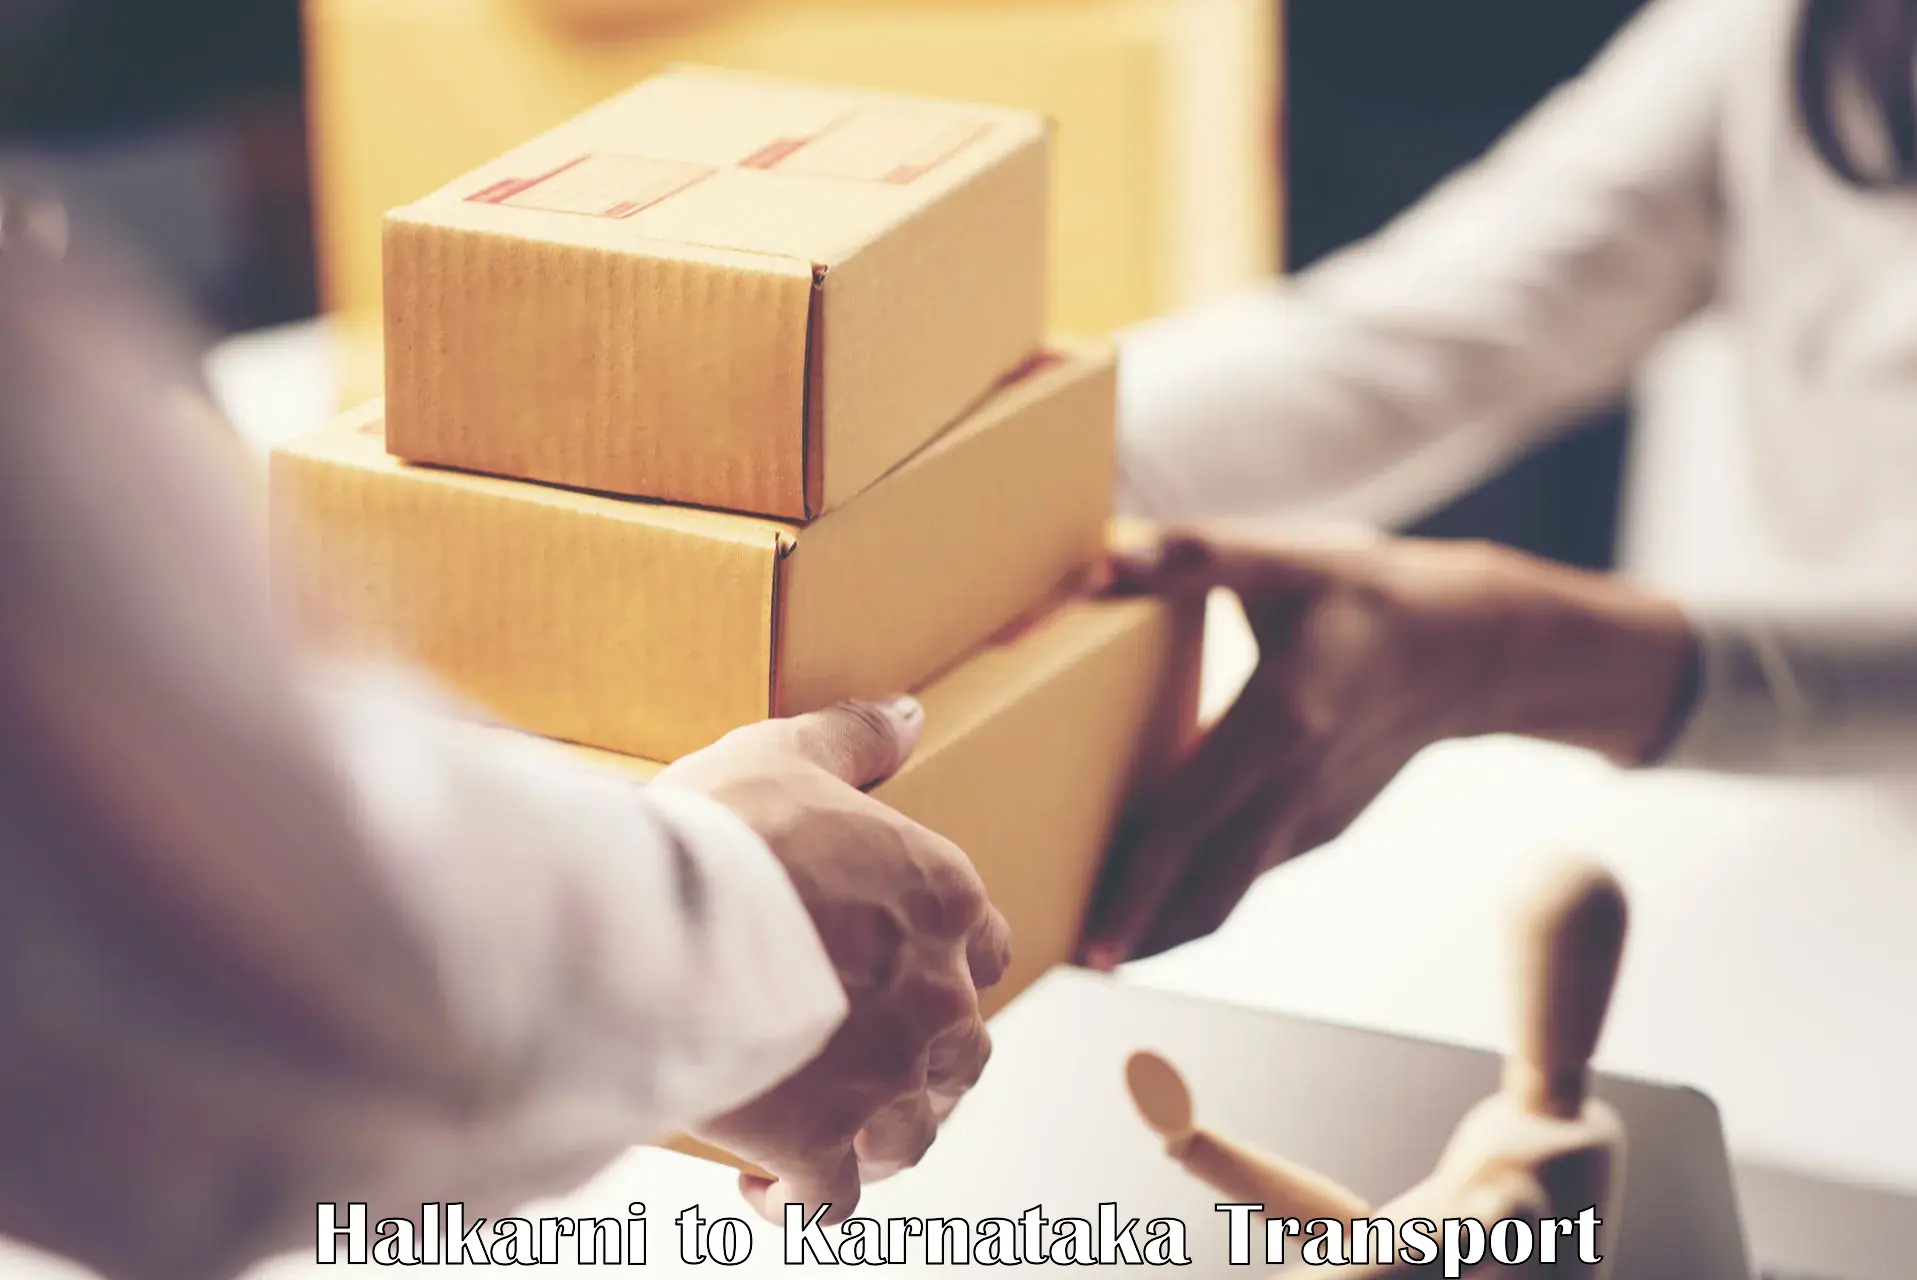 Shipping partner Halkarni to Hiriyur